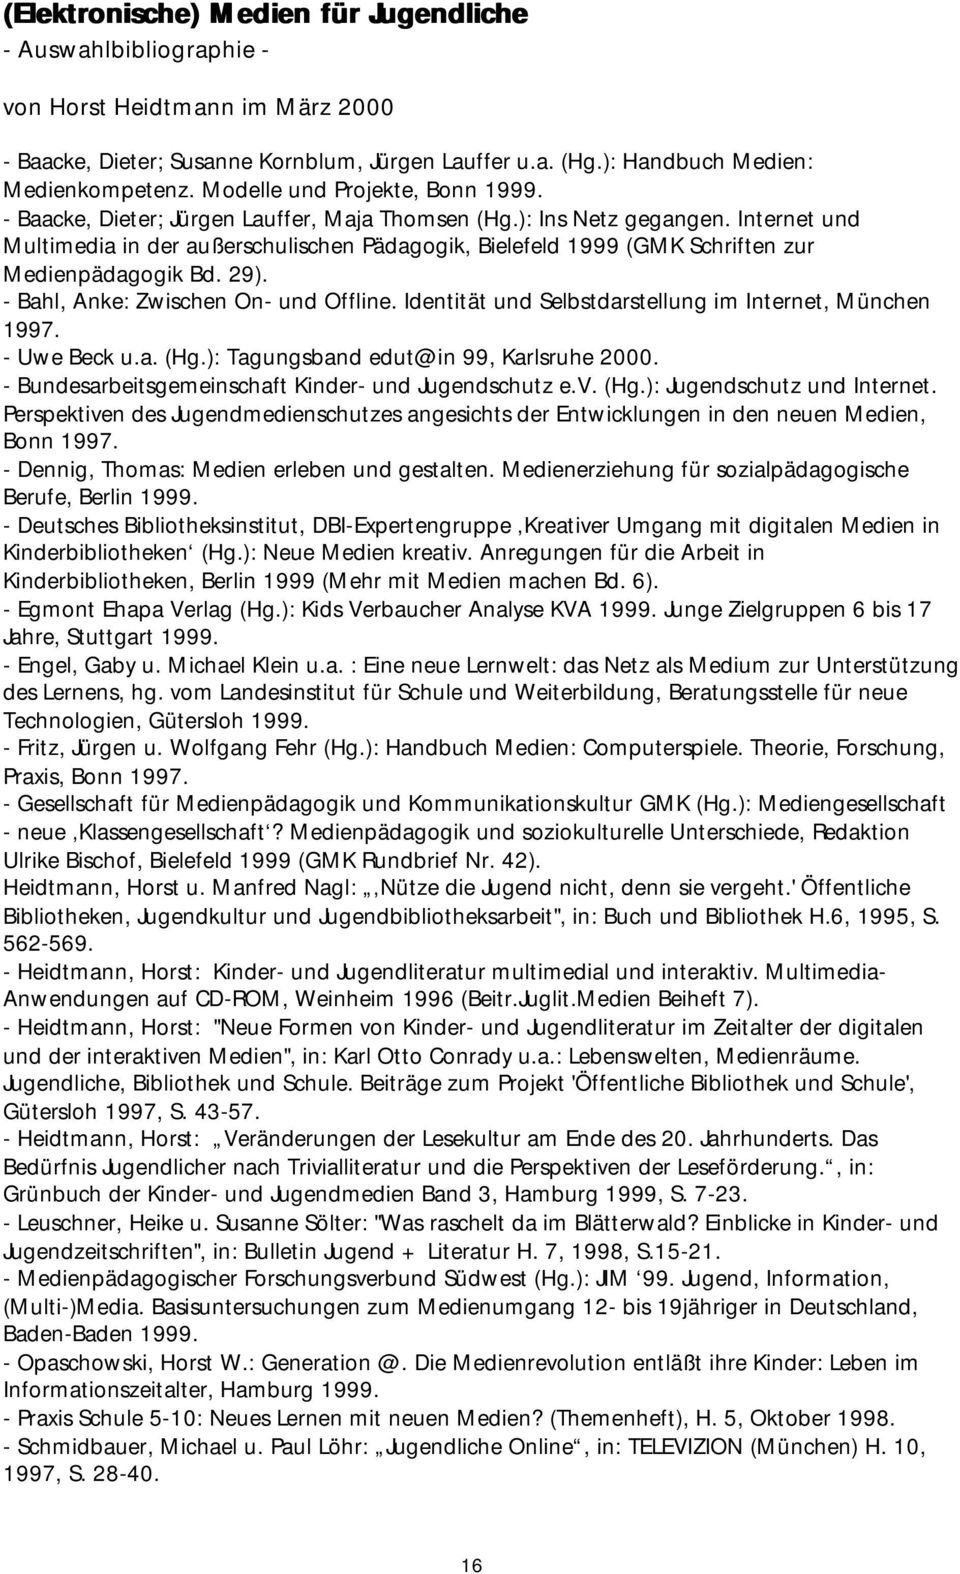 Internet und Multimedia in der außerschulischen Pädagogik, Bielefeld 1999 (GMK Schriften zur Medienpädagogik Bd. 29). - Bahl, Anke: Zwischen On- und Offline.